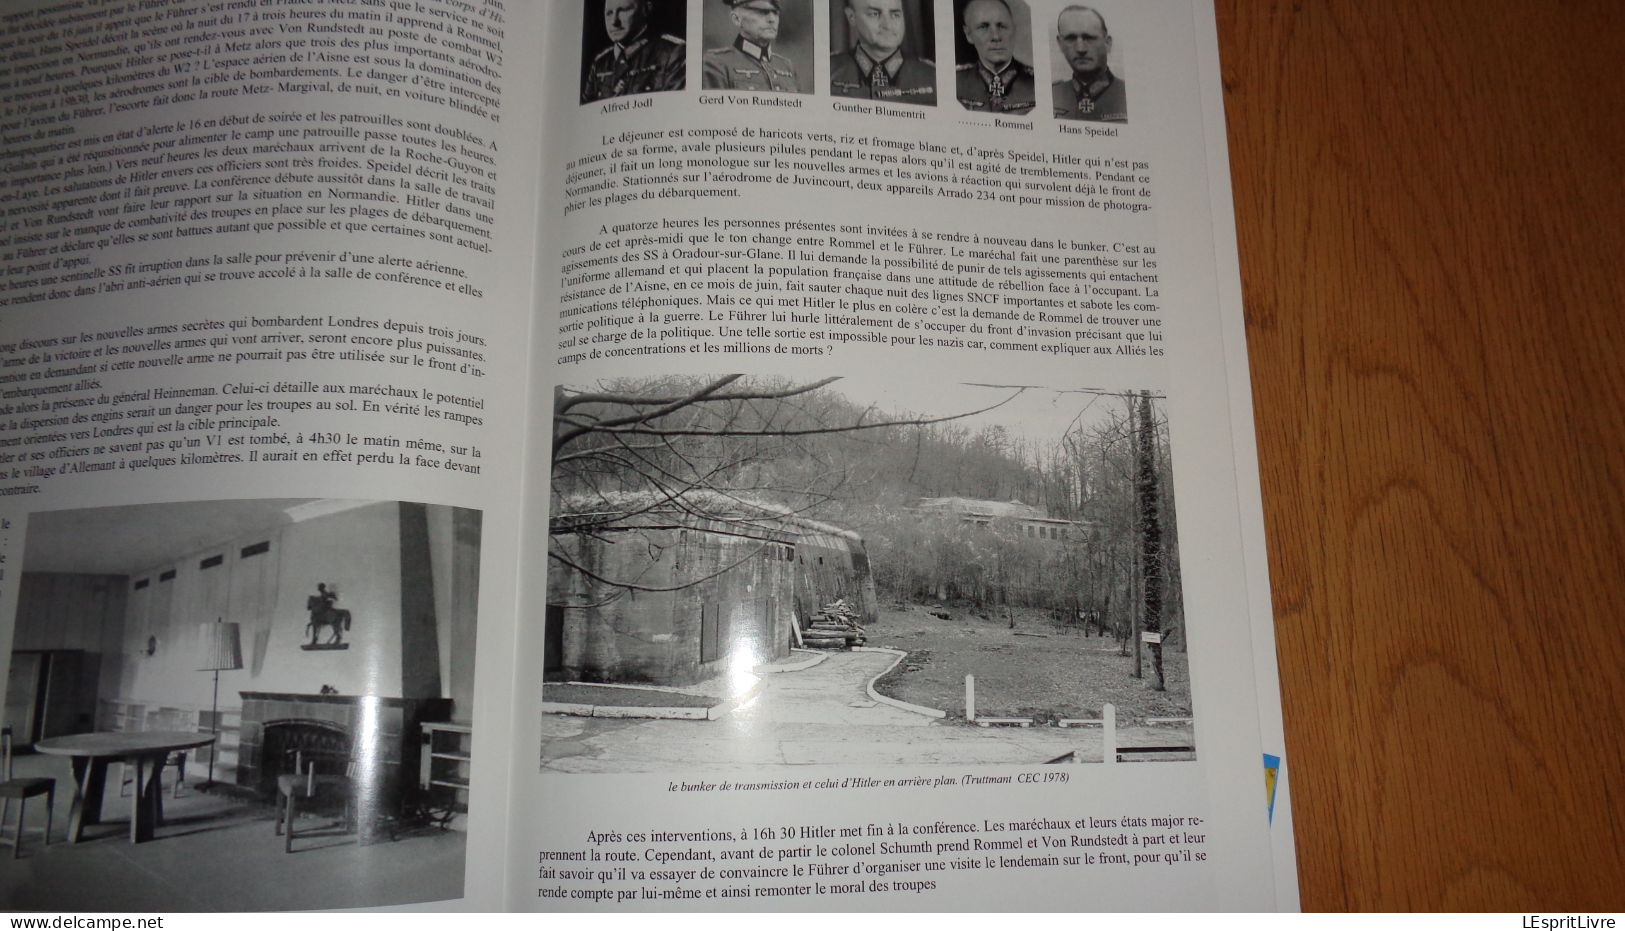 Le Magazine C H A V N° 11 Régionalisme Chavignon Aisne Histoire Guerre 14 18 Hitler à Margival 40 45 V STO Bois Caures